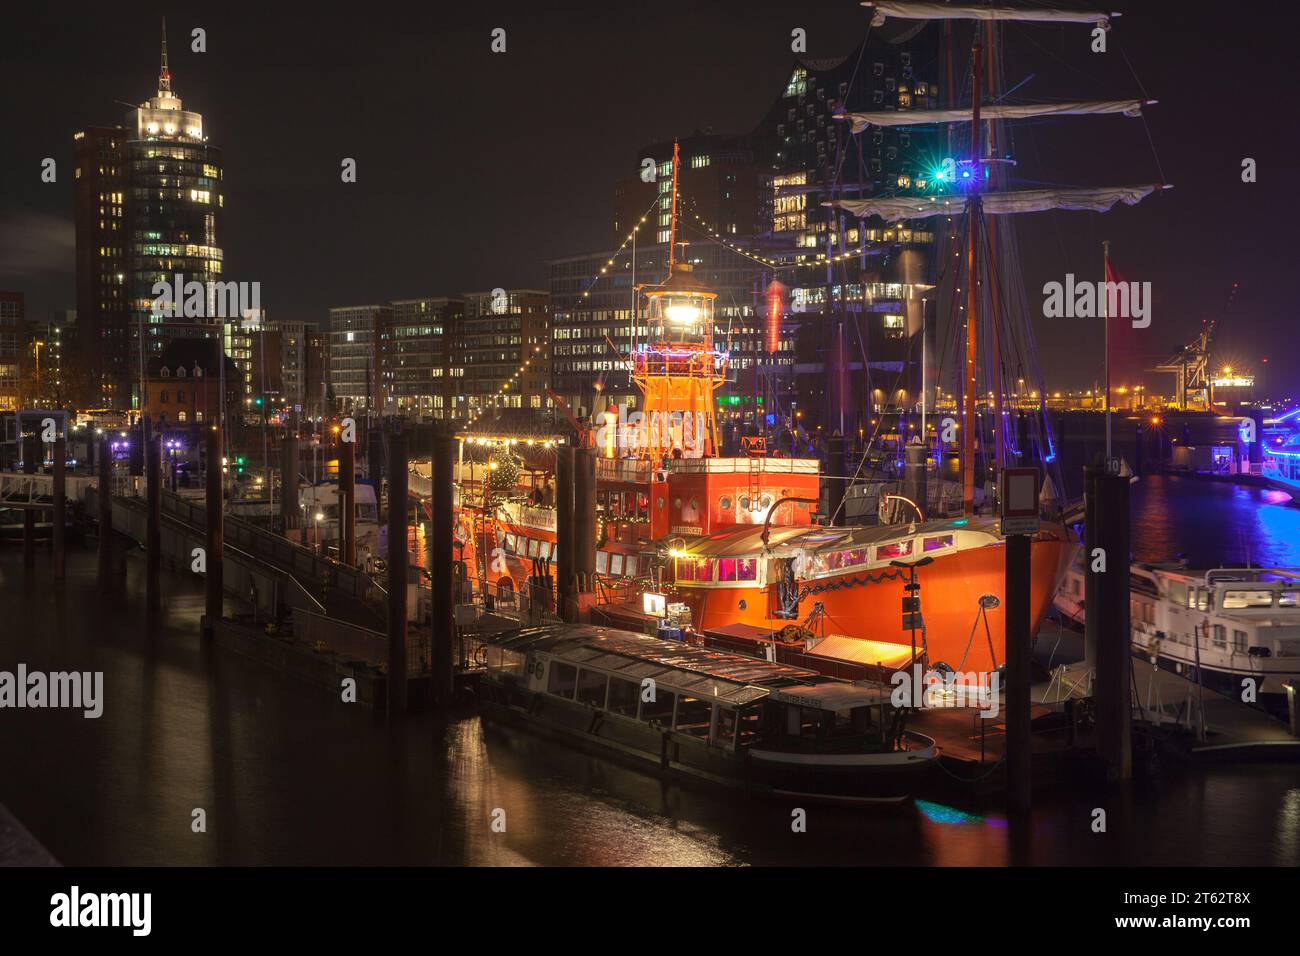 Hambourg, Allemagne - 29 novembre 2018 : vue nocturne du port de Hambourg avec des navires illuminés et des restaurants flottants Banque D'Images